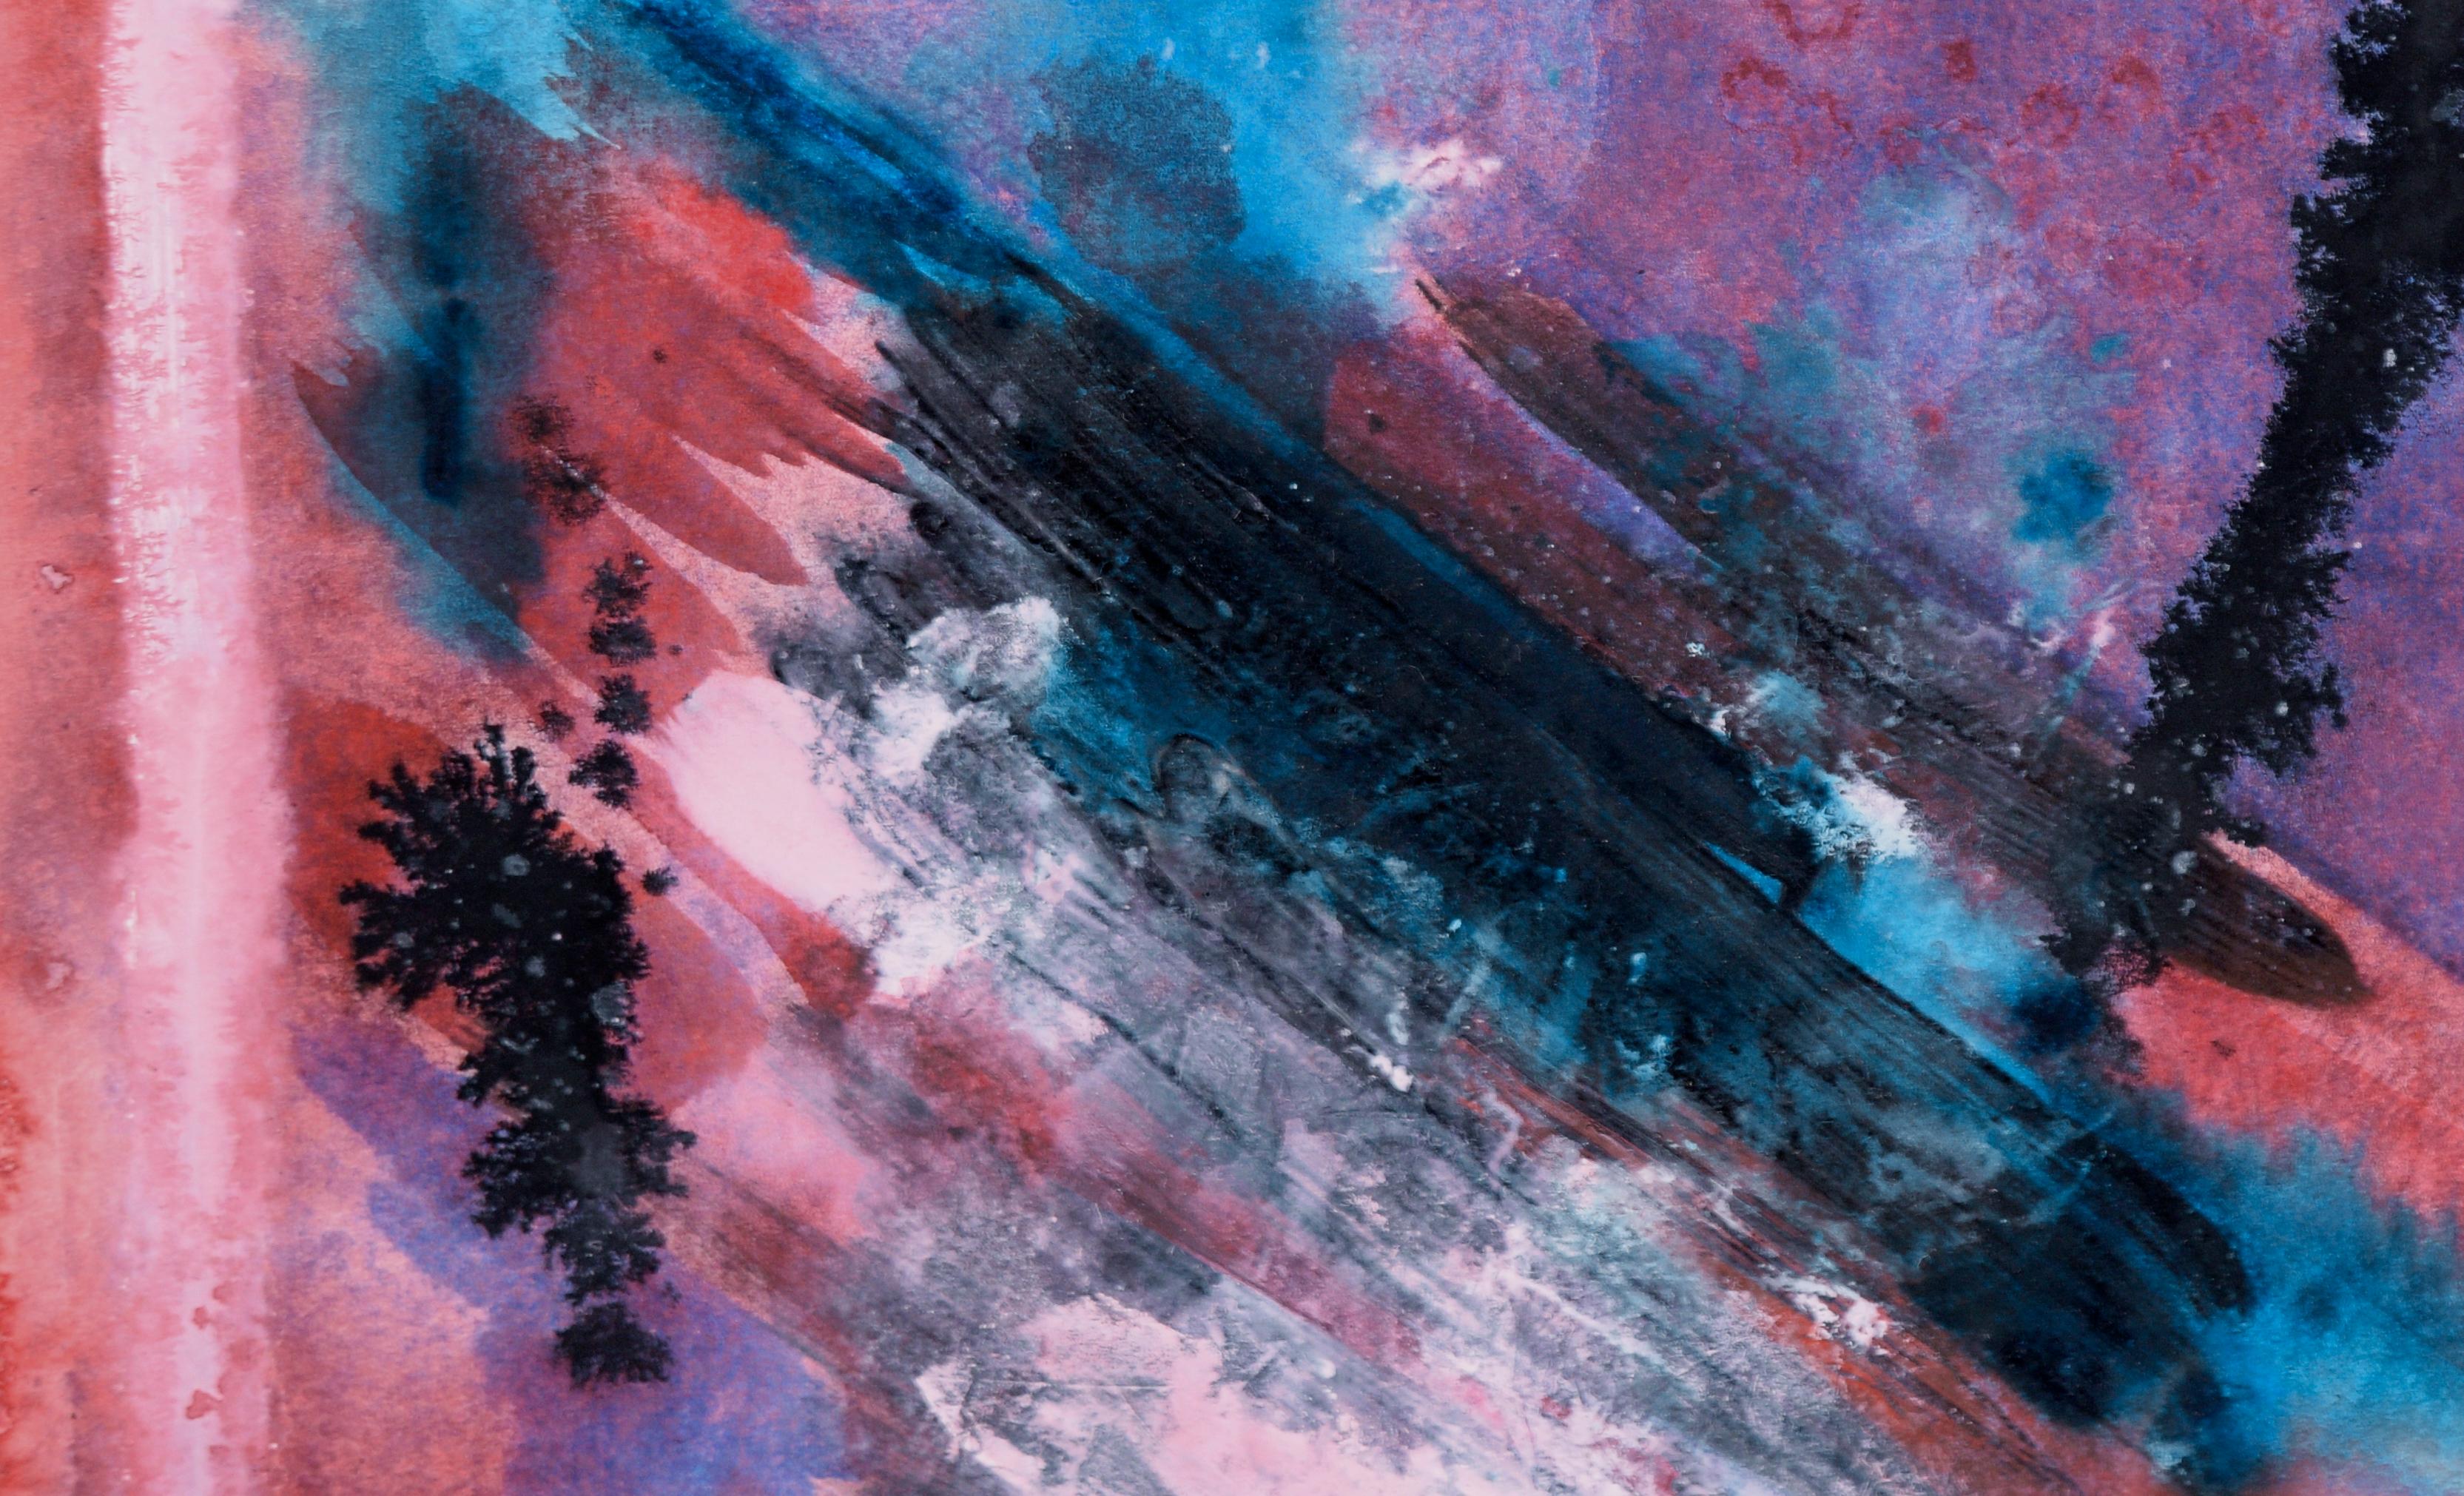 Subaquatischer Canyon – Abstrakter Expressionismus auf Papier

Abstraktes Werk des in Kalifornien lebenden Künstlers Ricardo de Silva (Brasilianer, 20. Jahrhundert) in kräftigem Blau und Rot, das mit Salz, Tusche und Aquarellfarben strukturiert ist.